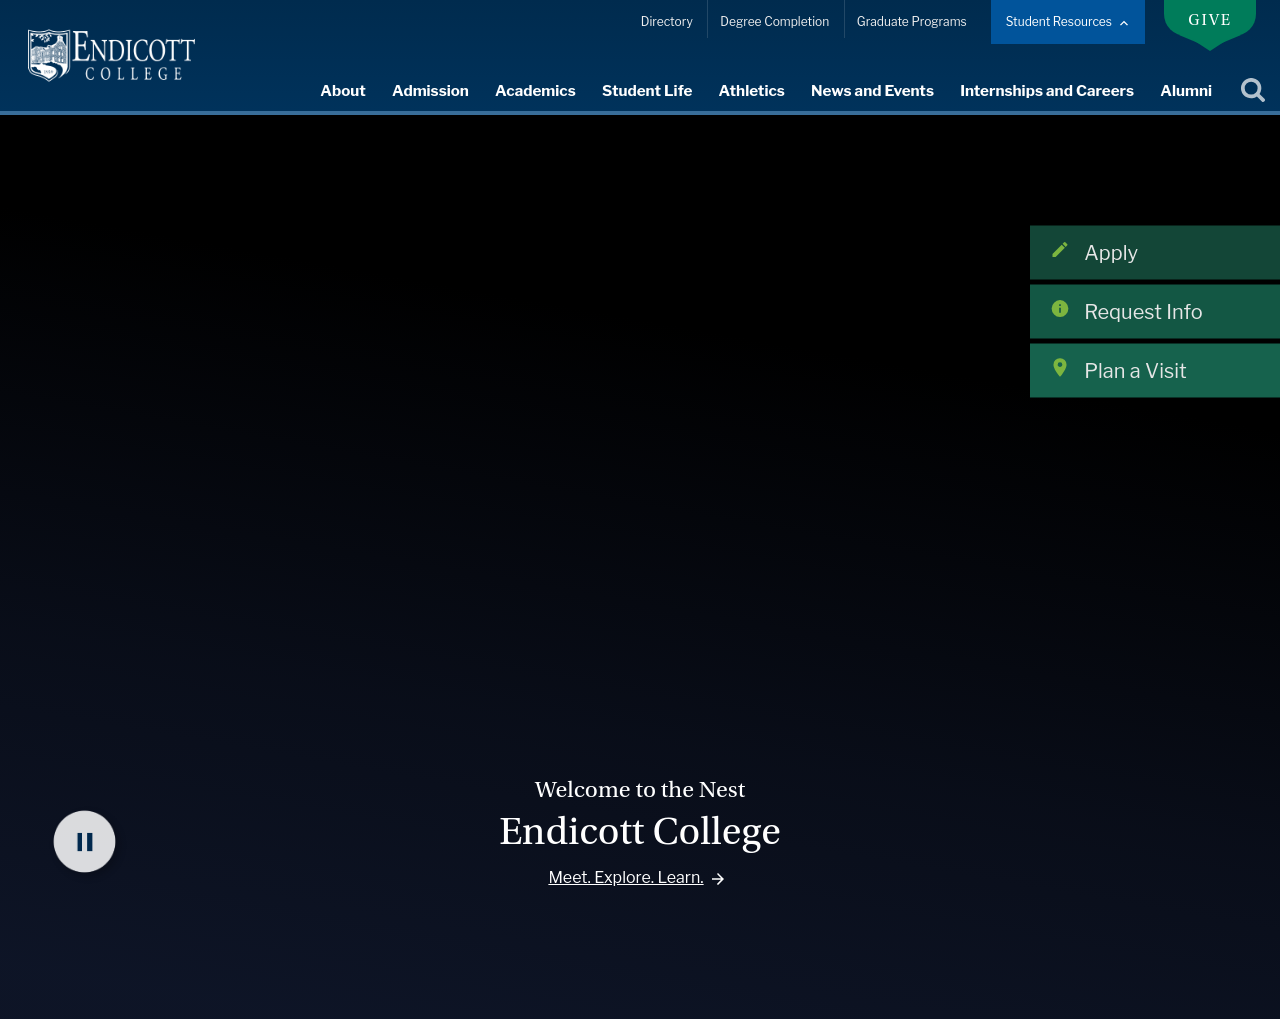 endicott.edu